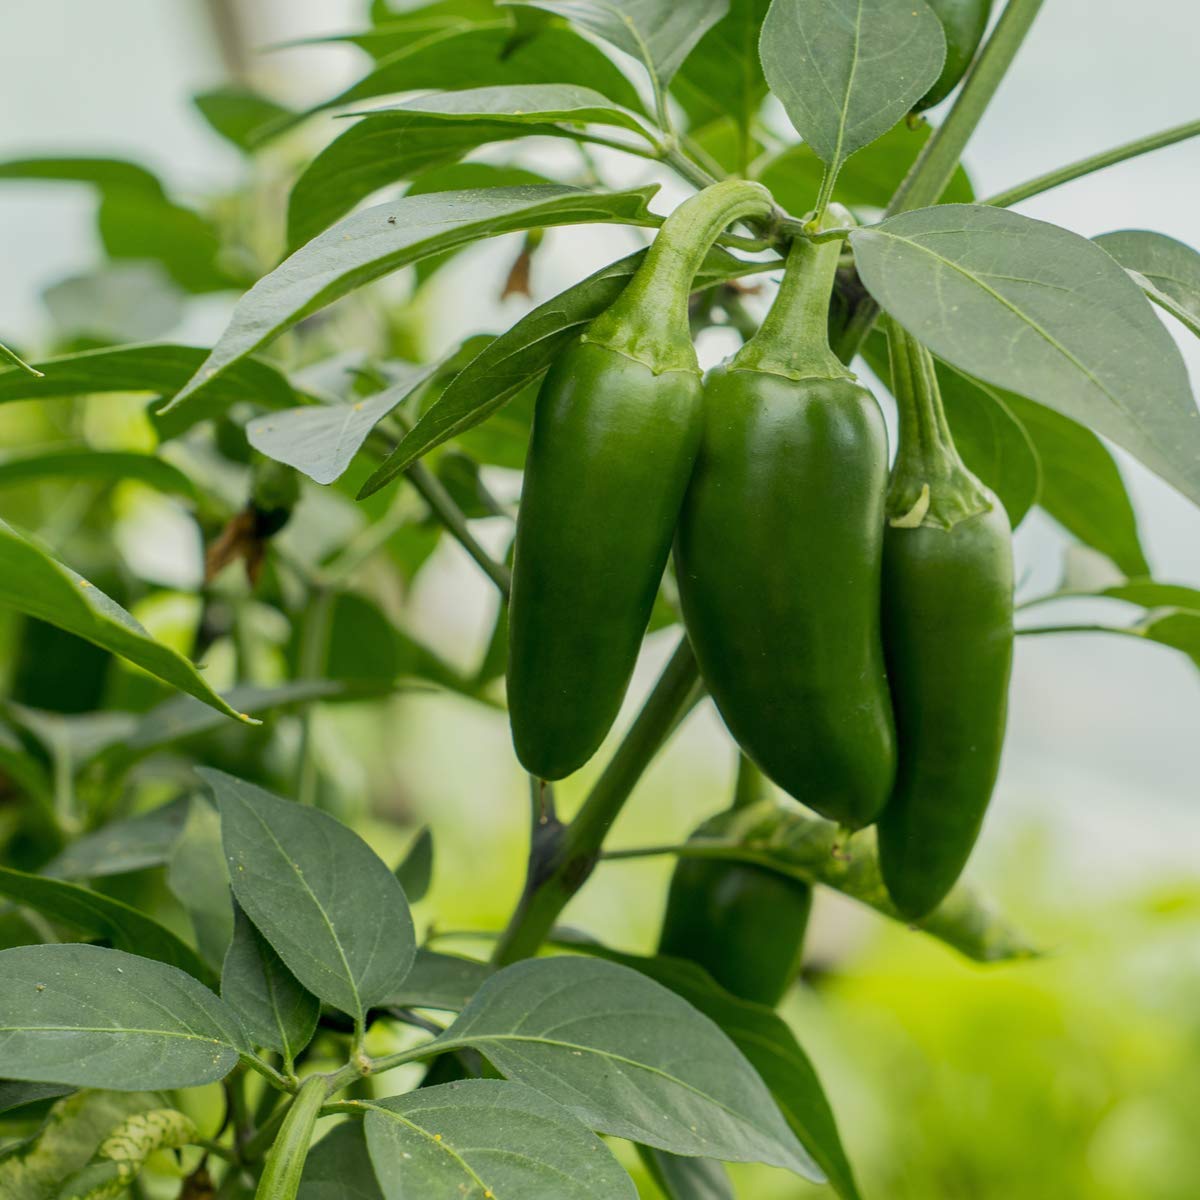 Chilli Pepper Plants - 'Giant Jalapeño' - 18 x Plug Plant Pack - AcquaGarden